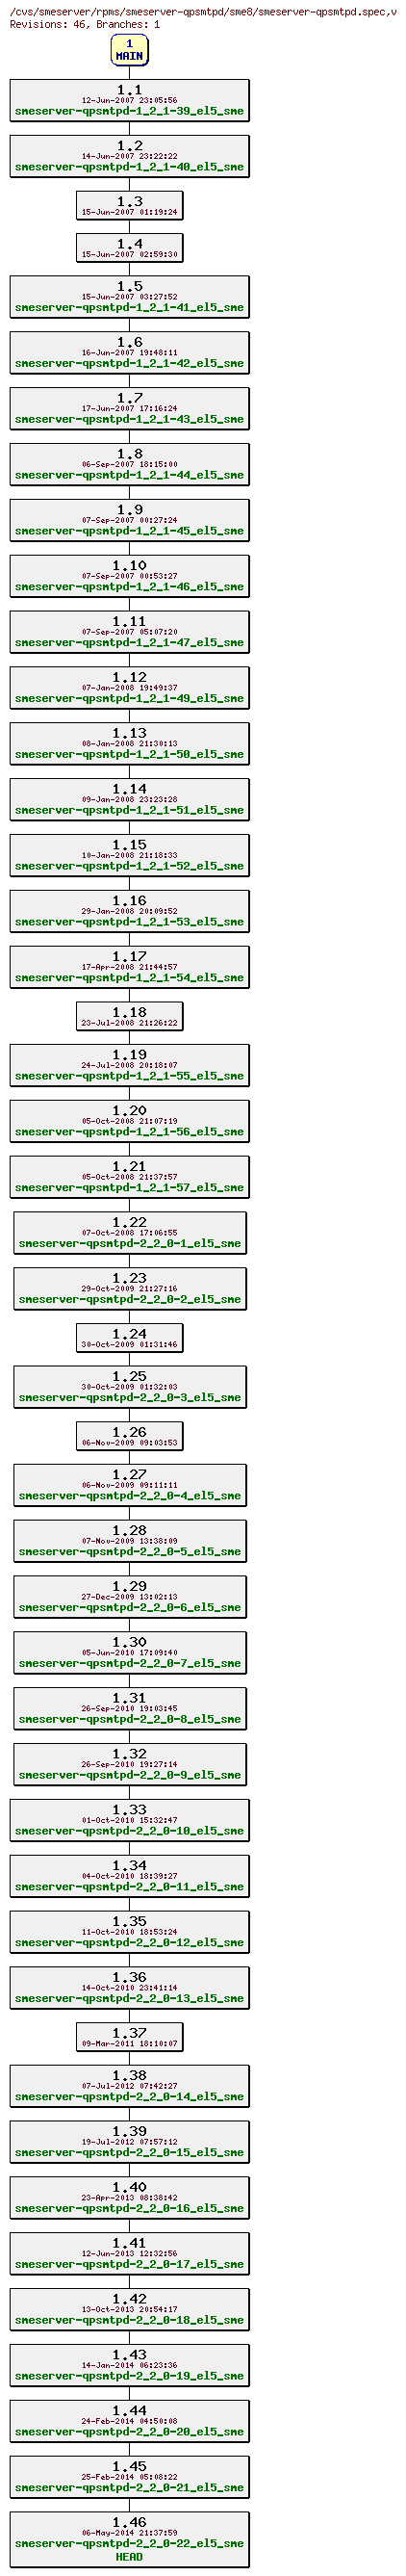 Revisions of rpms/smeserver-qpsmtpd/sme8/smeserver-qpsmtpd.spec